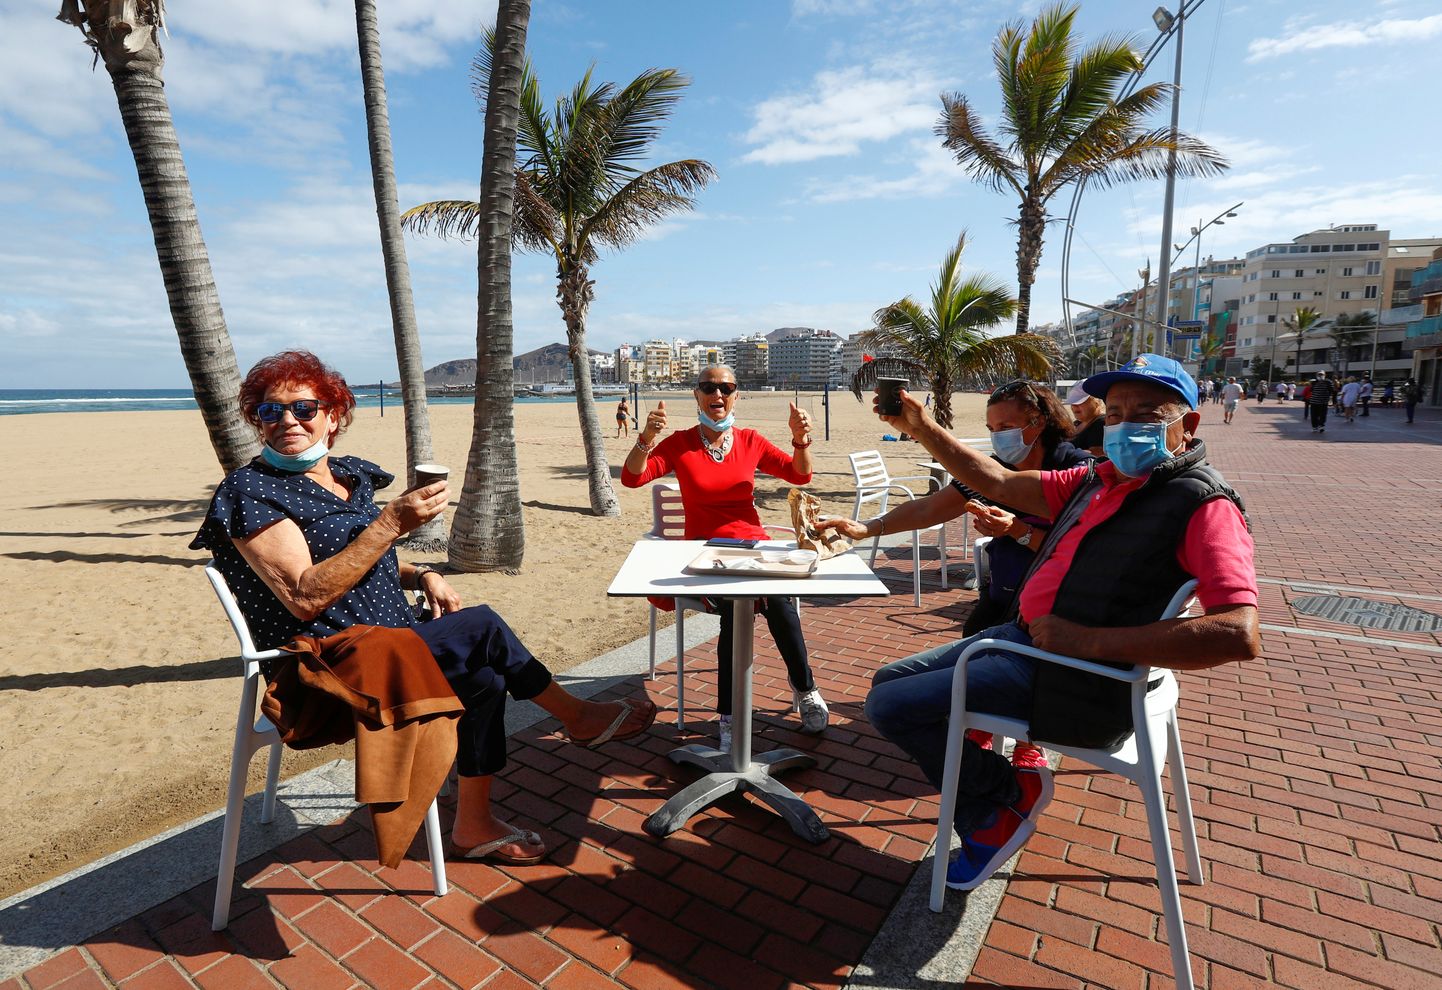 Vabaõhukohvik Hispaanias Cran Canarial Las Canterases. Hispaani plaanib turistid riiki lubada juuni lõpul